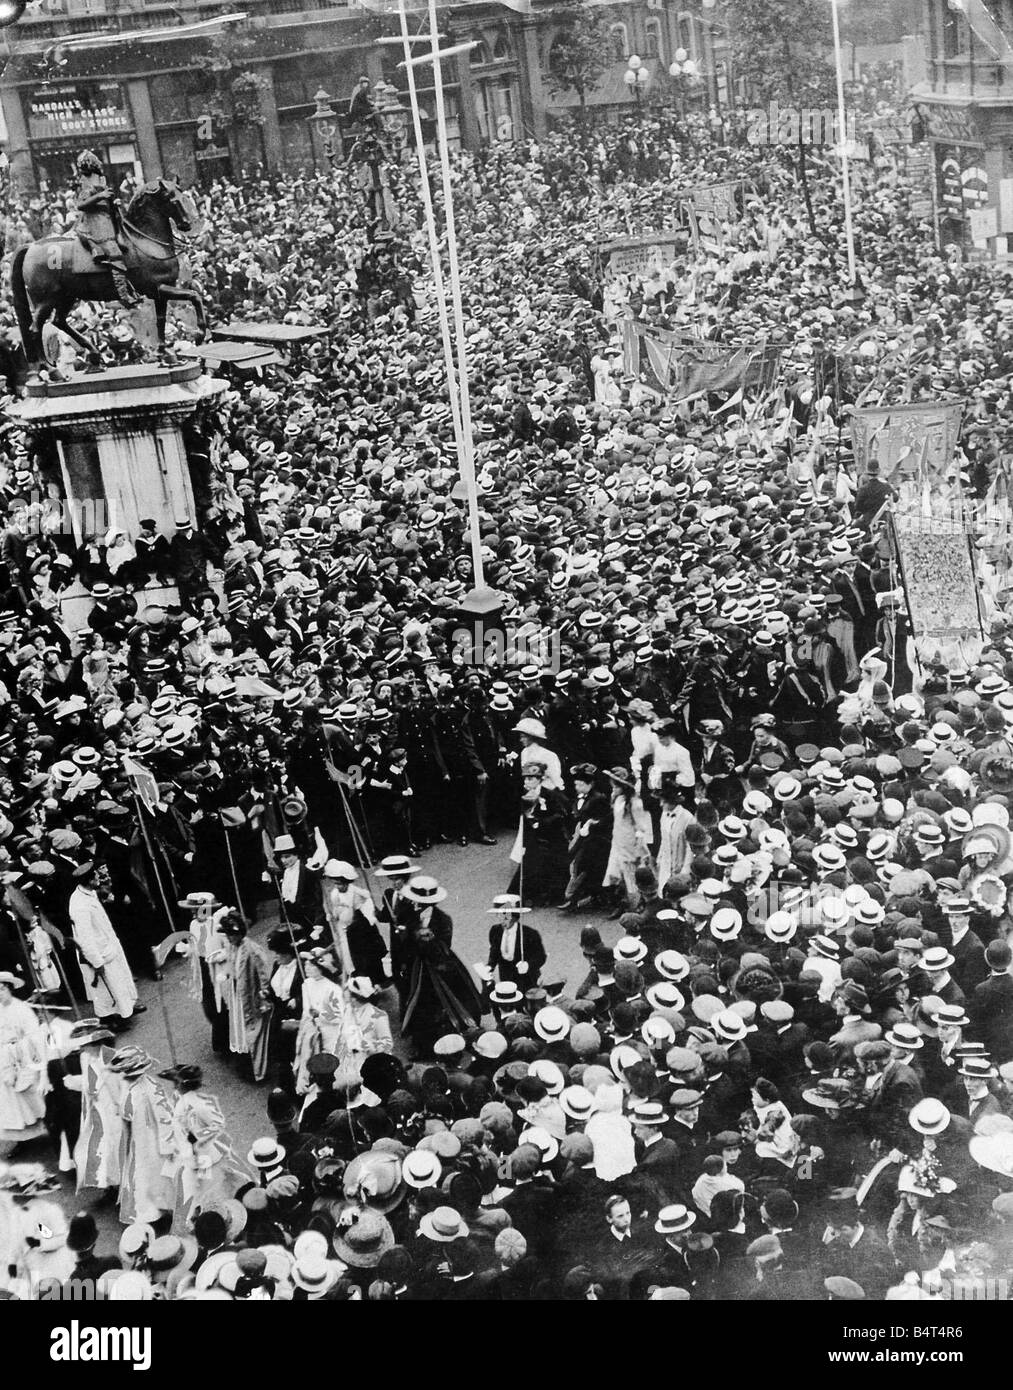 40 juin 1911 000 suffragettes forte dans une procession de 11 kilomètres de long à partir de mars le remblai à l'Albert Hall Londres La procession passant par Trafalgar Sqaure où une foule s'était rassemblée imense 1910 Womens Rights Movement Banque D'Images